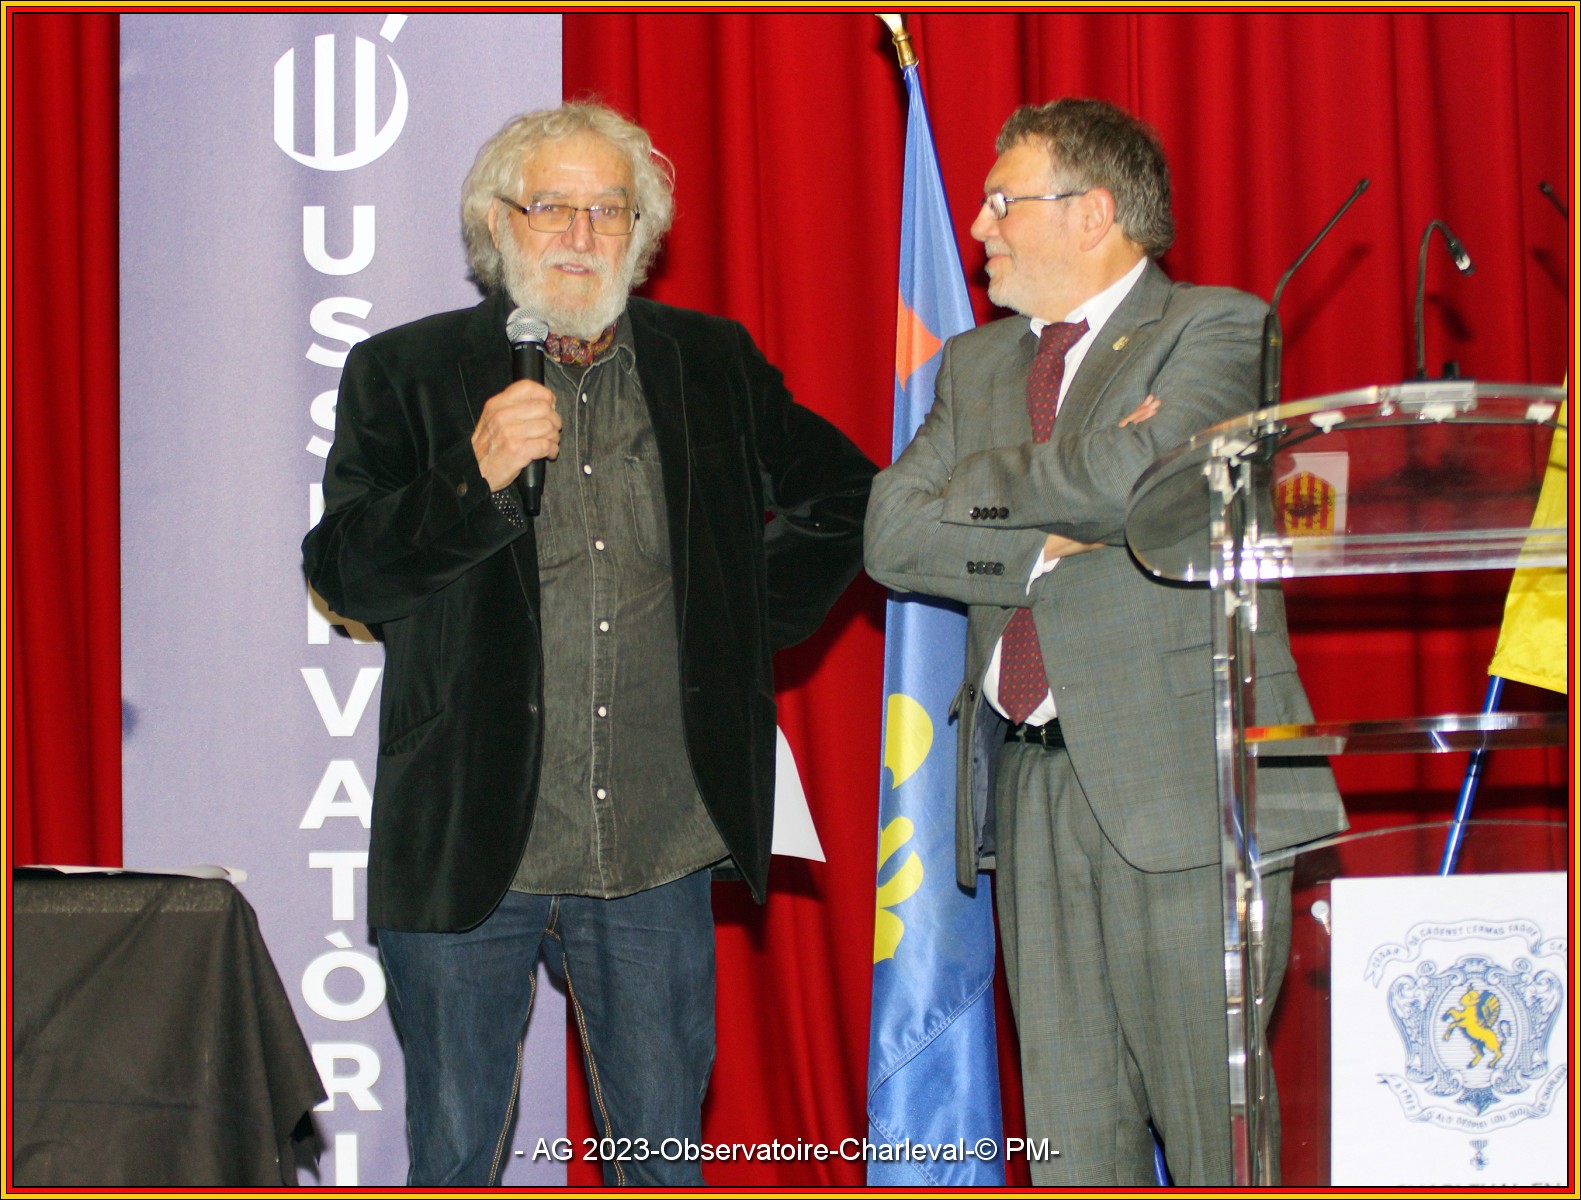 Robert Aprin, membre du Collectif Depuis la création, a reçu son diplôme de membre d'honneur des mains du Président Jean-Pierre Richard